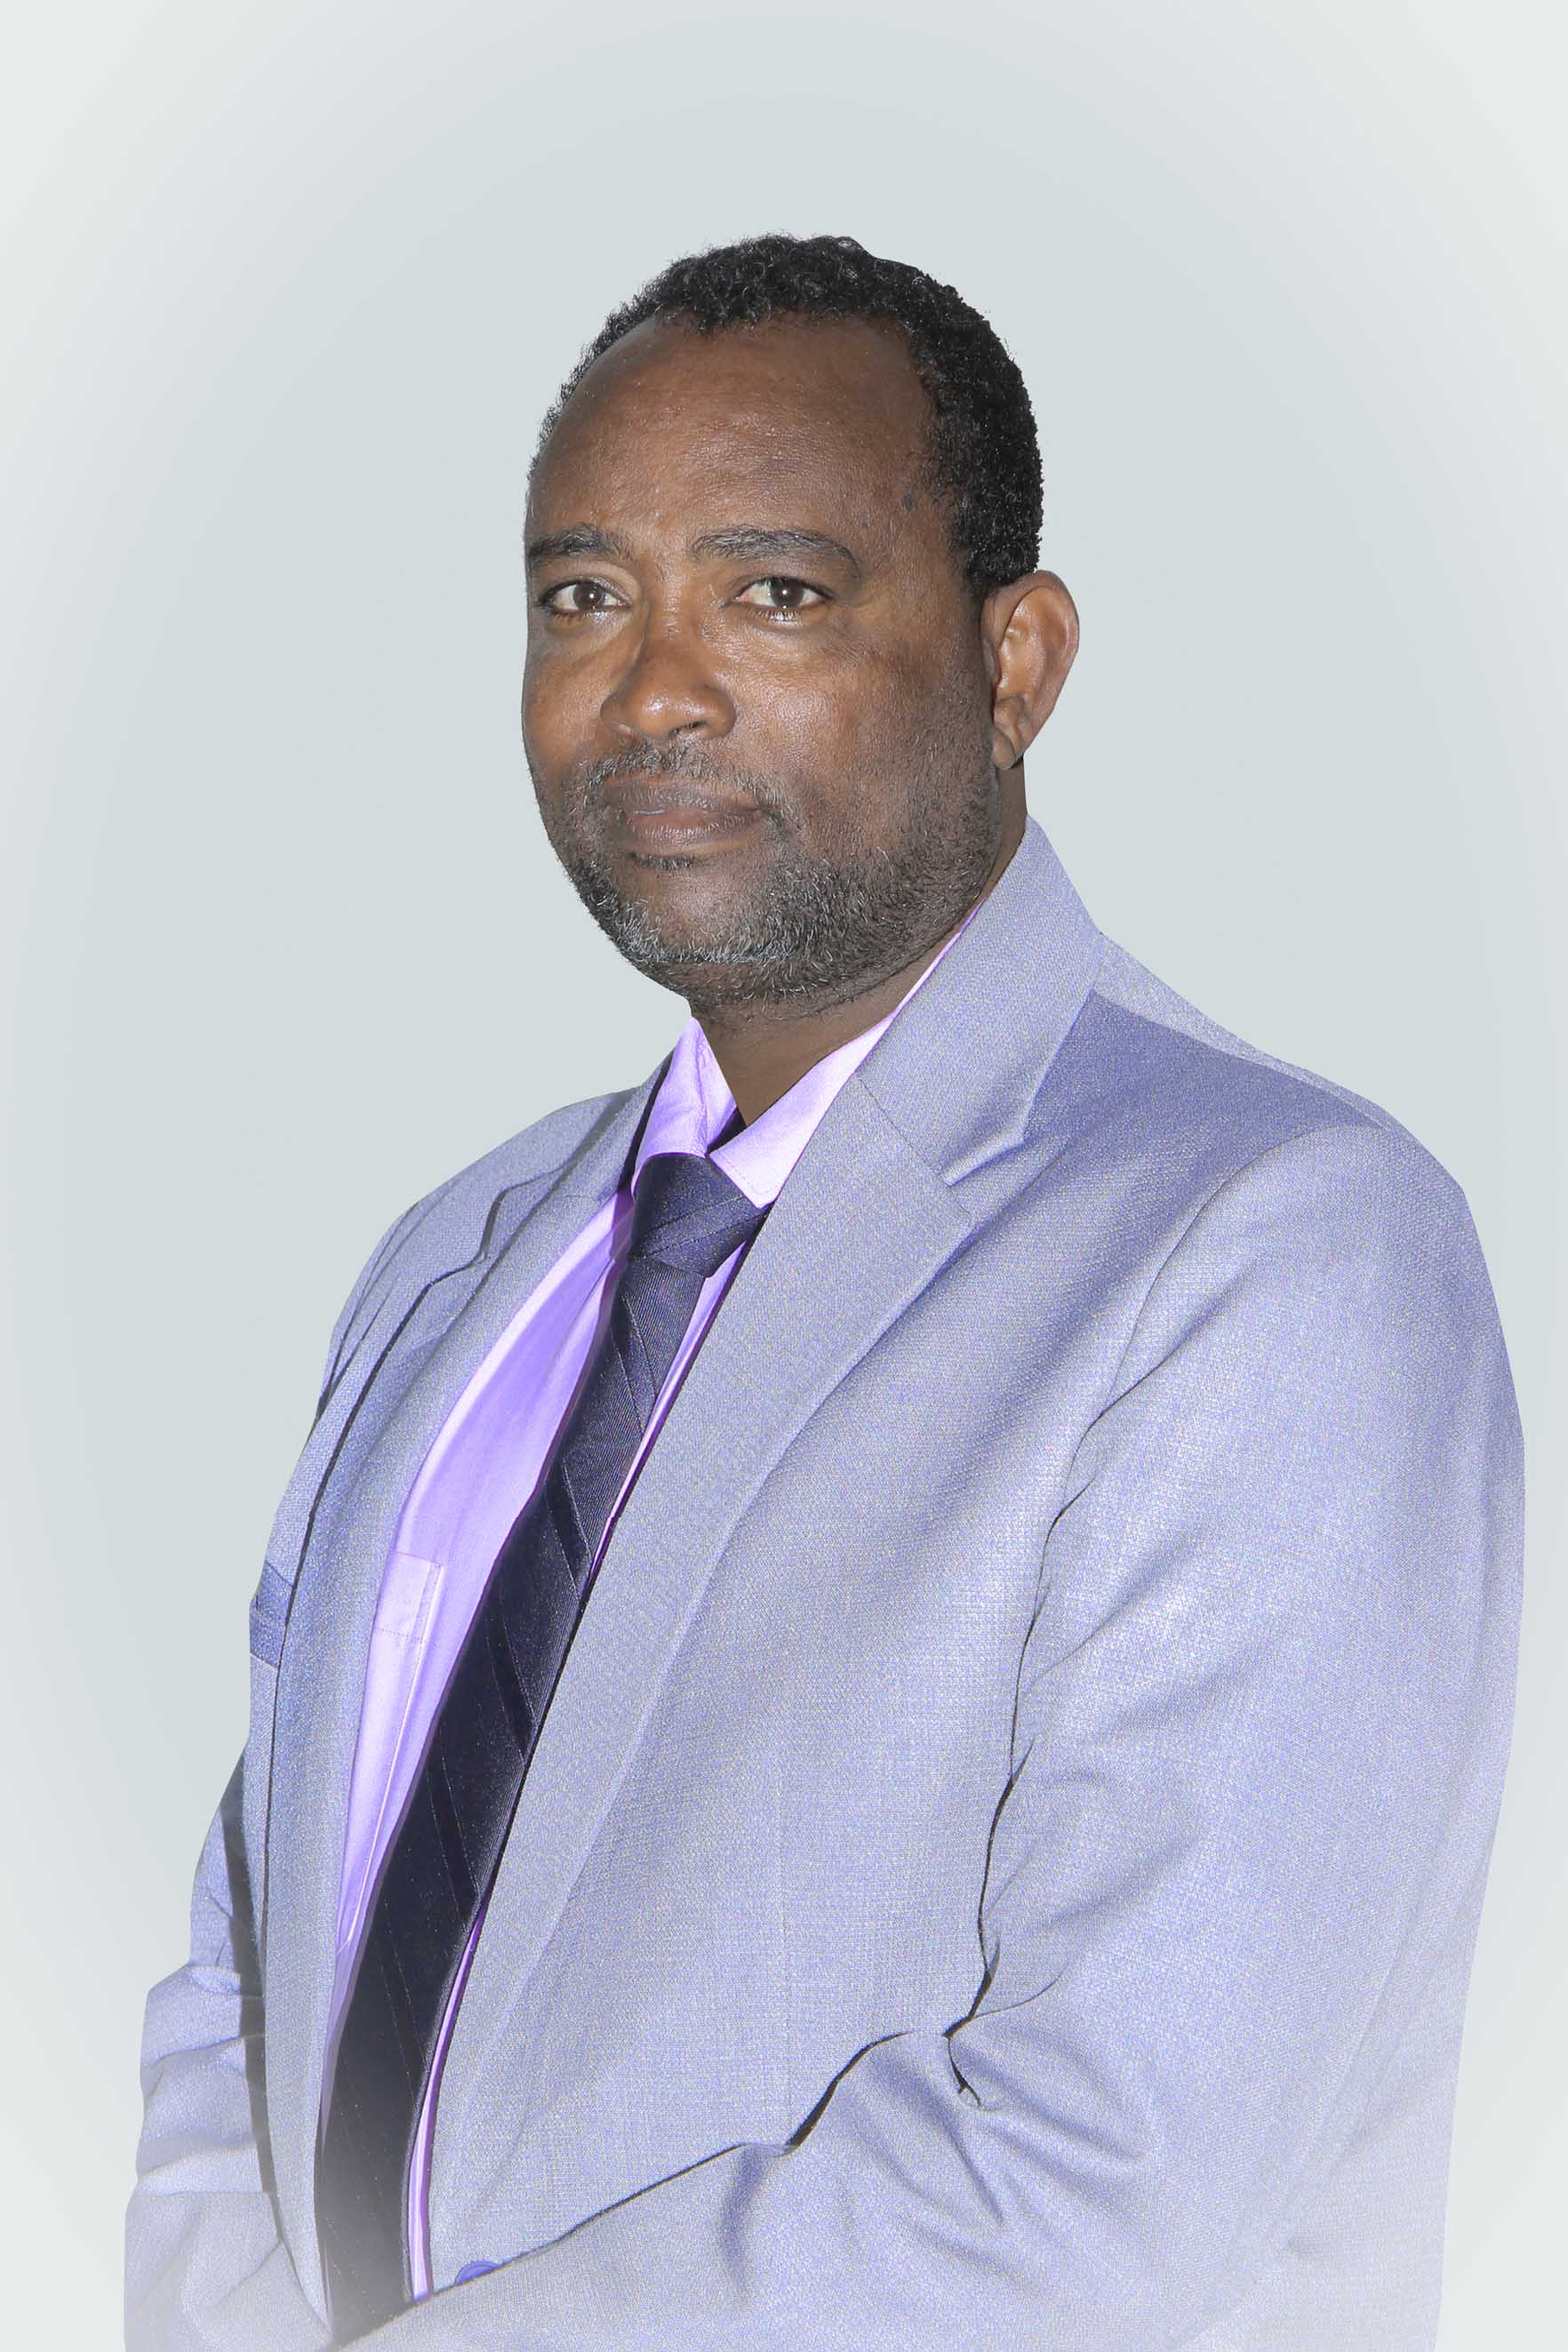 Mr. Bedilu Hailemariam